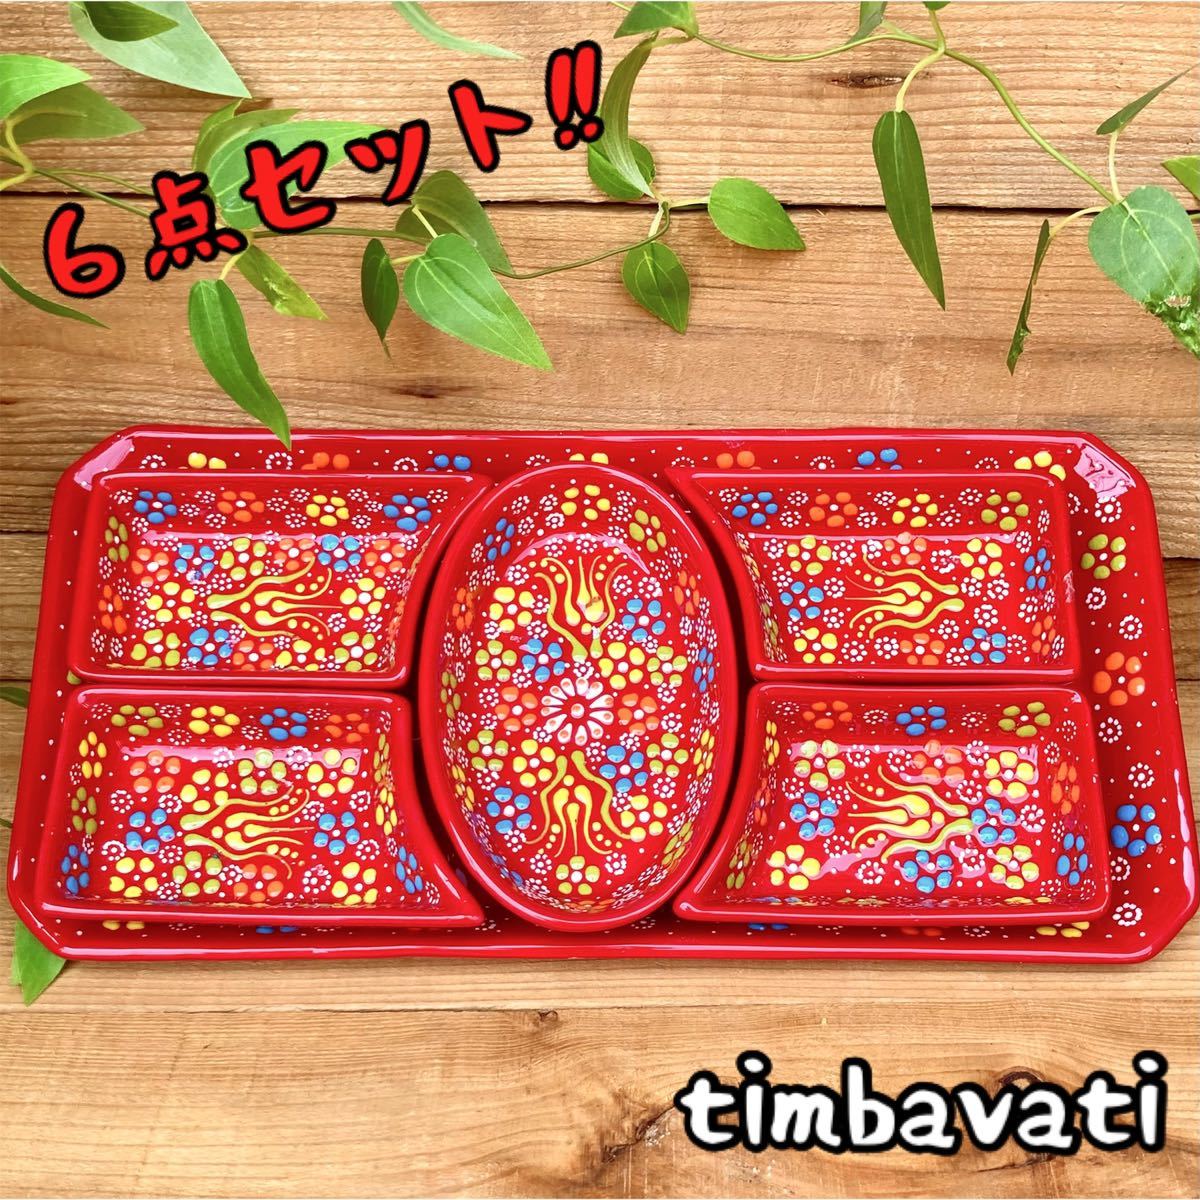 6 件套☆全新☆土耳其陶器餐具套装盘和餐盘*红色* 手工 Kyutafya 陶器 070, 西餐餐具, 盘子, 盘子, 其他的